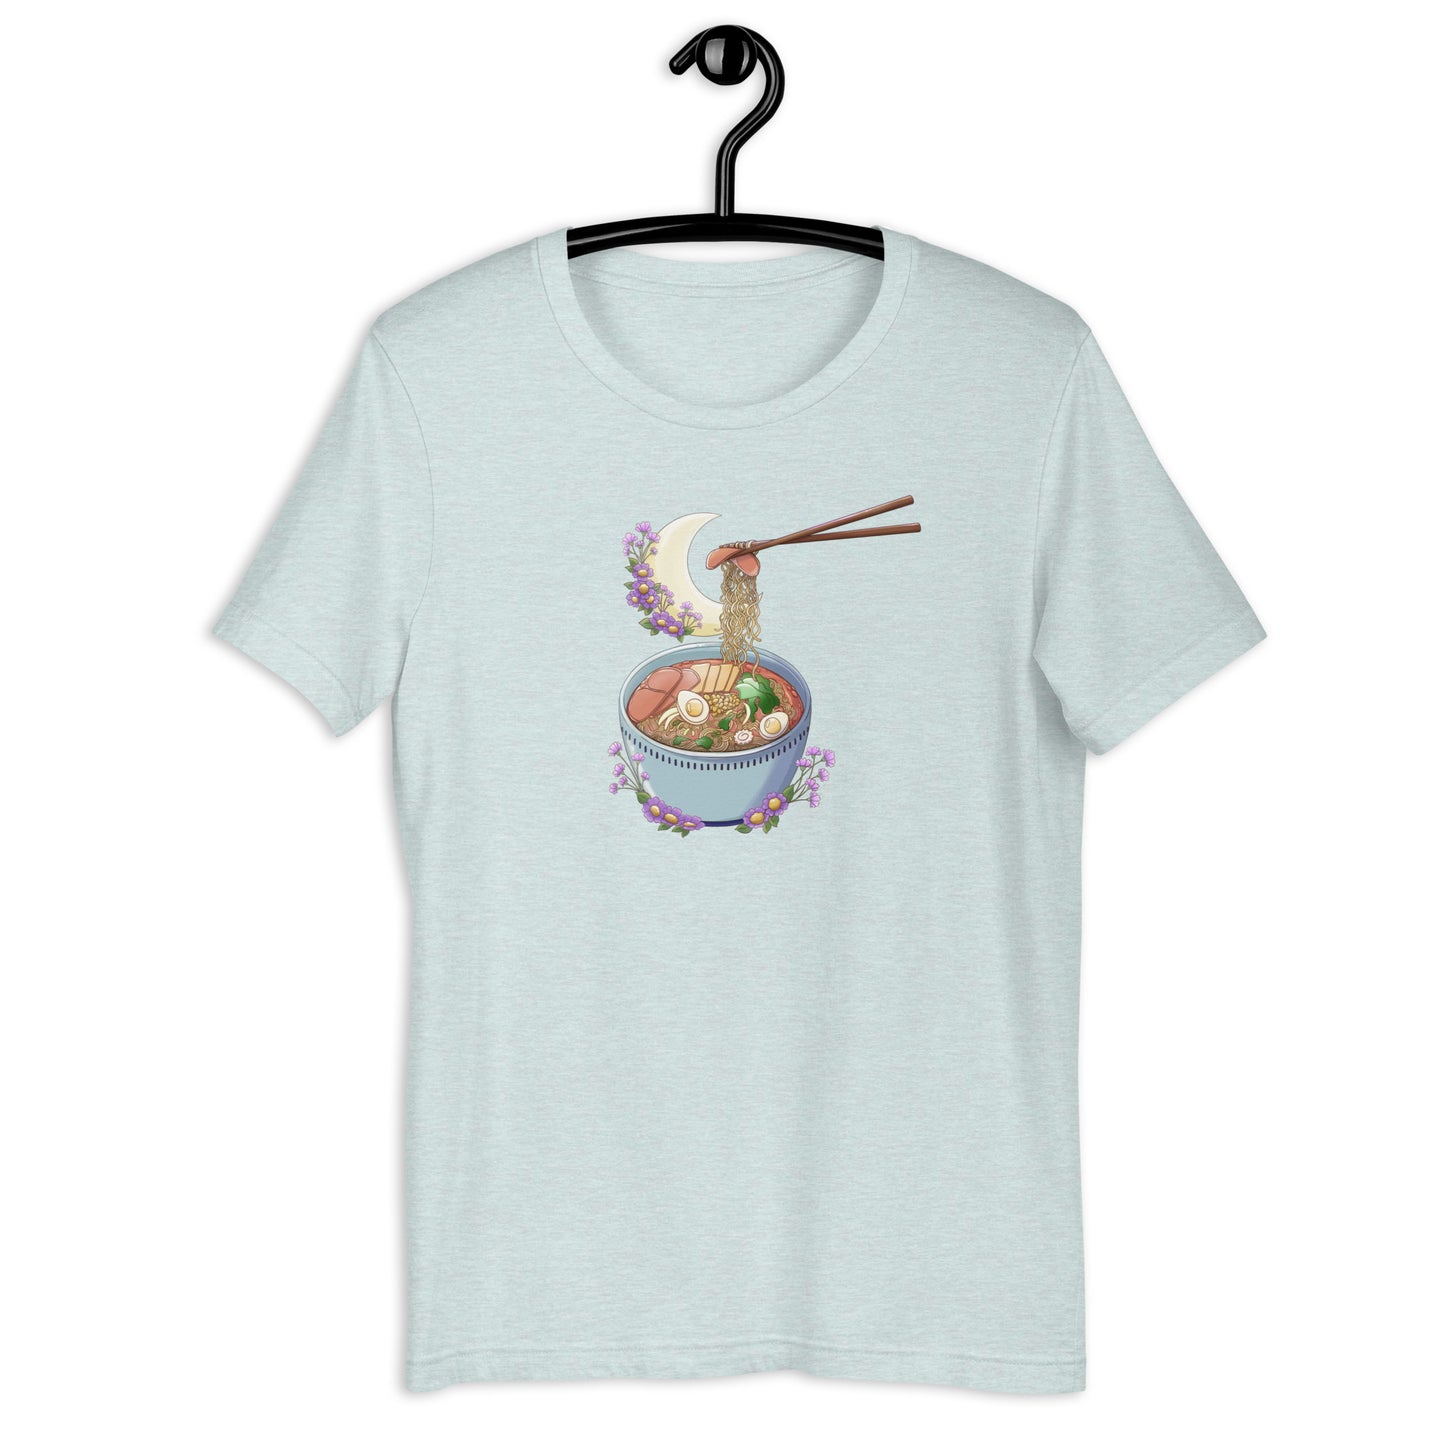 Ramen Bowl Unisex T-shirt